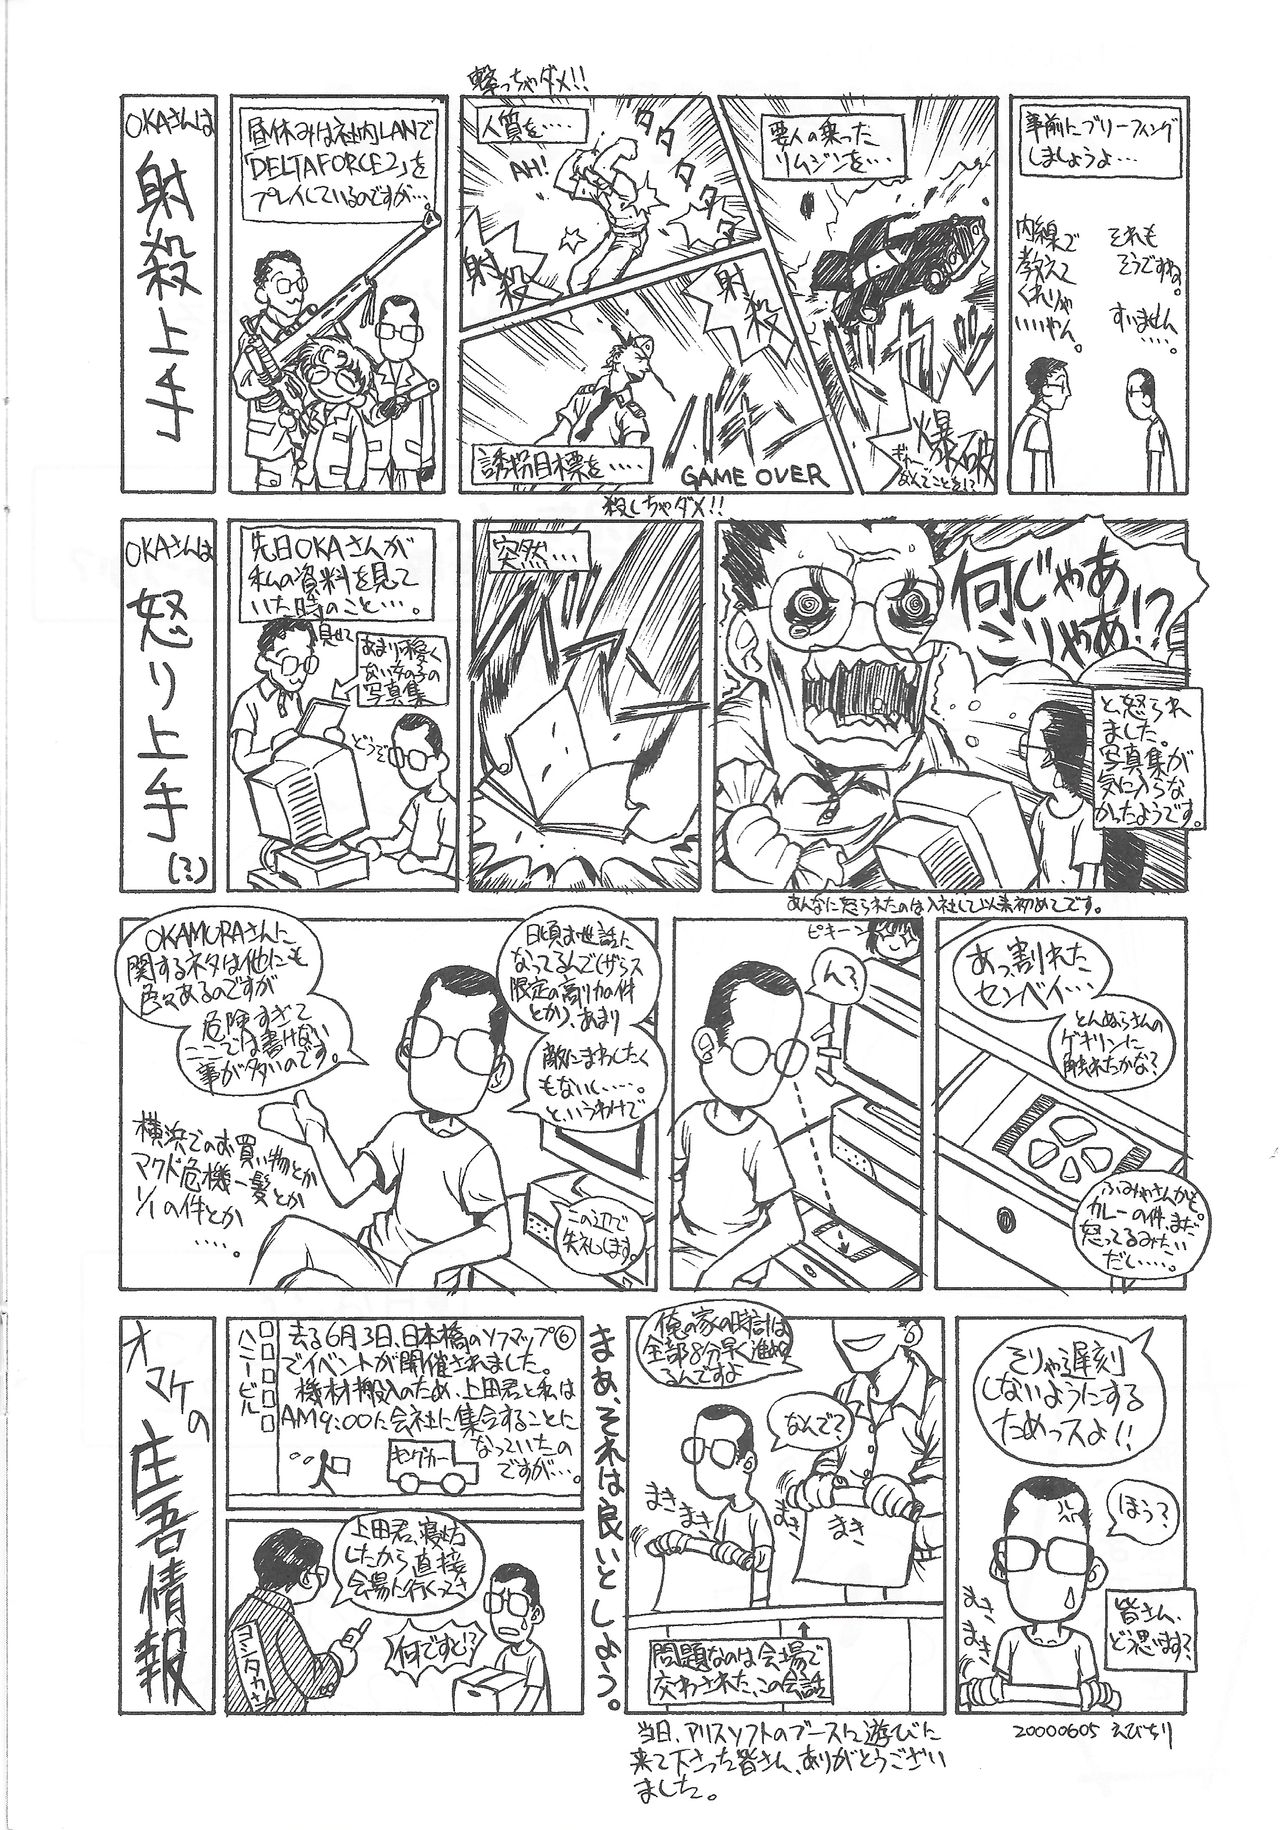 Arisu no Denchi Bakudan Vol. 12 20